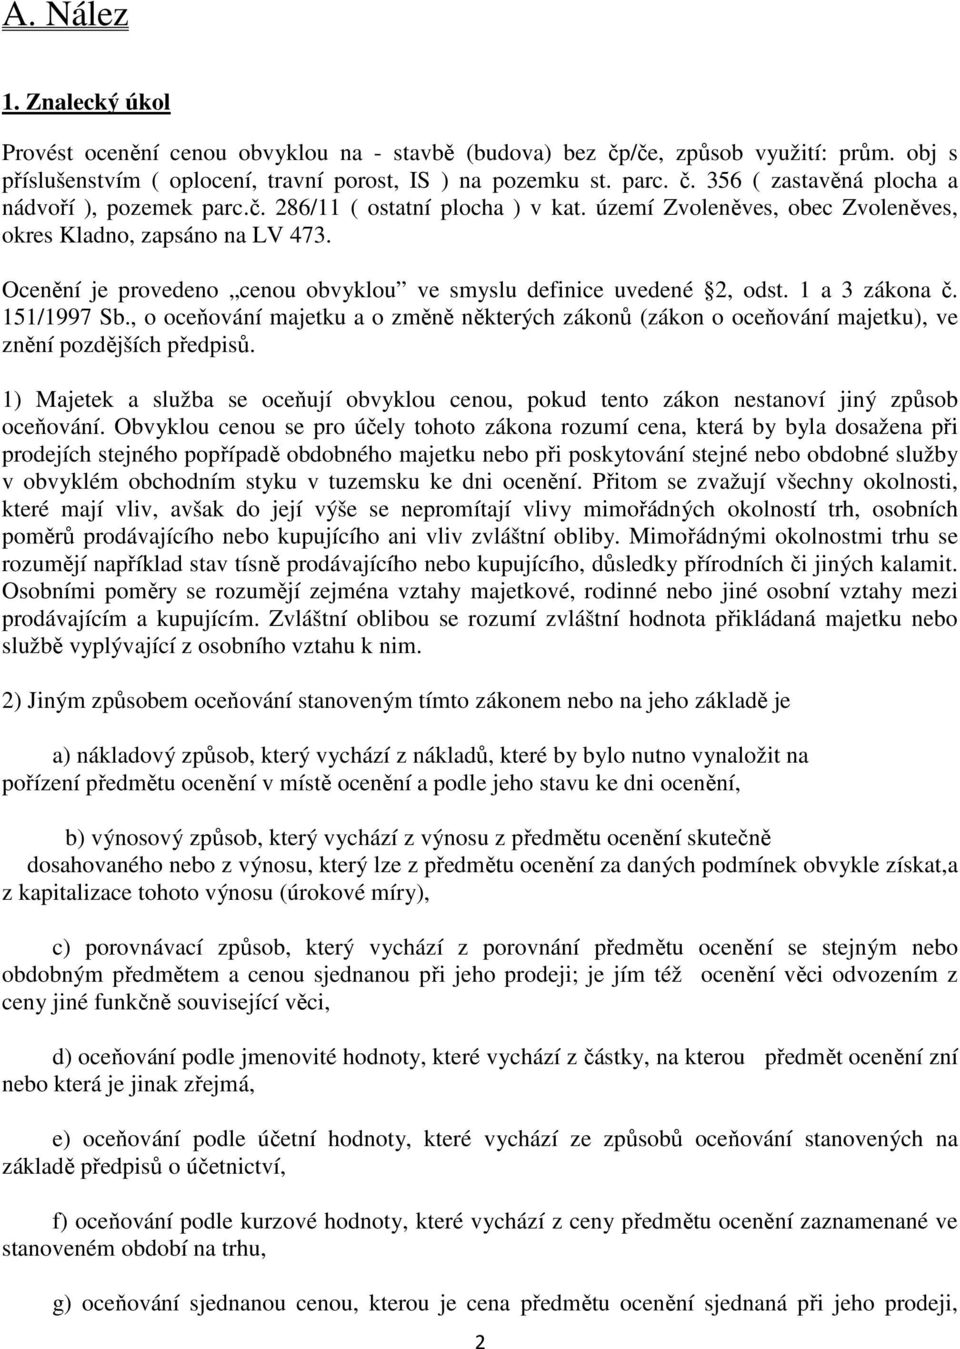 151/1997 Sb., o oceňování majetku a o změně některých zákonů (zákon o oceňování majetku), ve znění pozdějších předpisů.